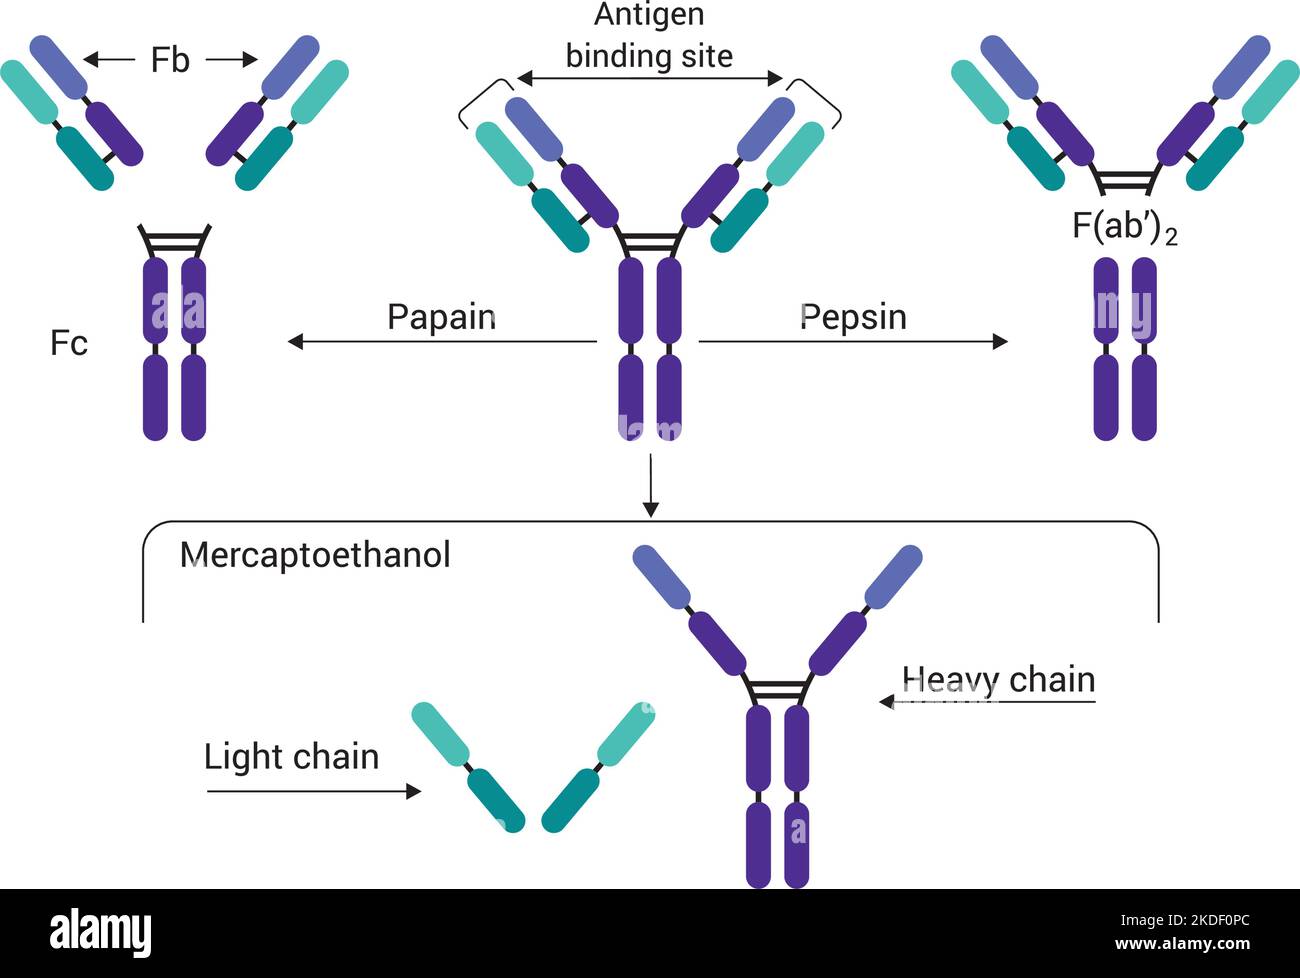 Structure des anticorps de l'immunoglobuline avec les enzymes papaïne et pepsine, la structure de base d'un anticorps, montrant les chaînes légères et les chaînes lourdes Illustration de Vecteur